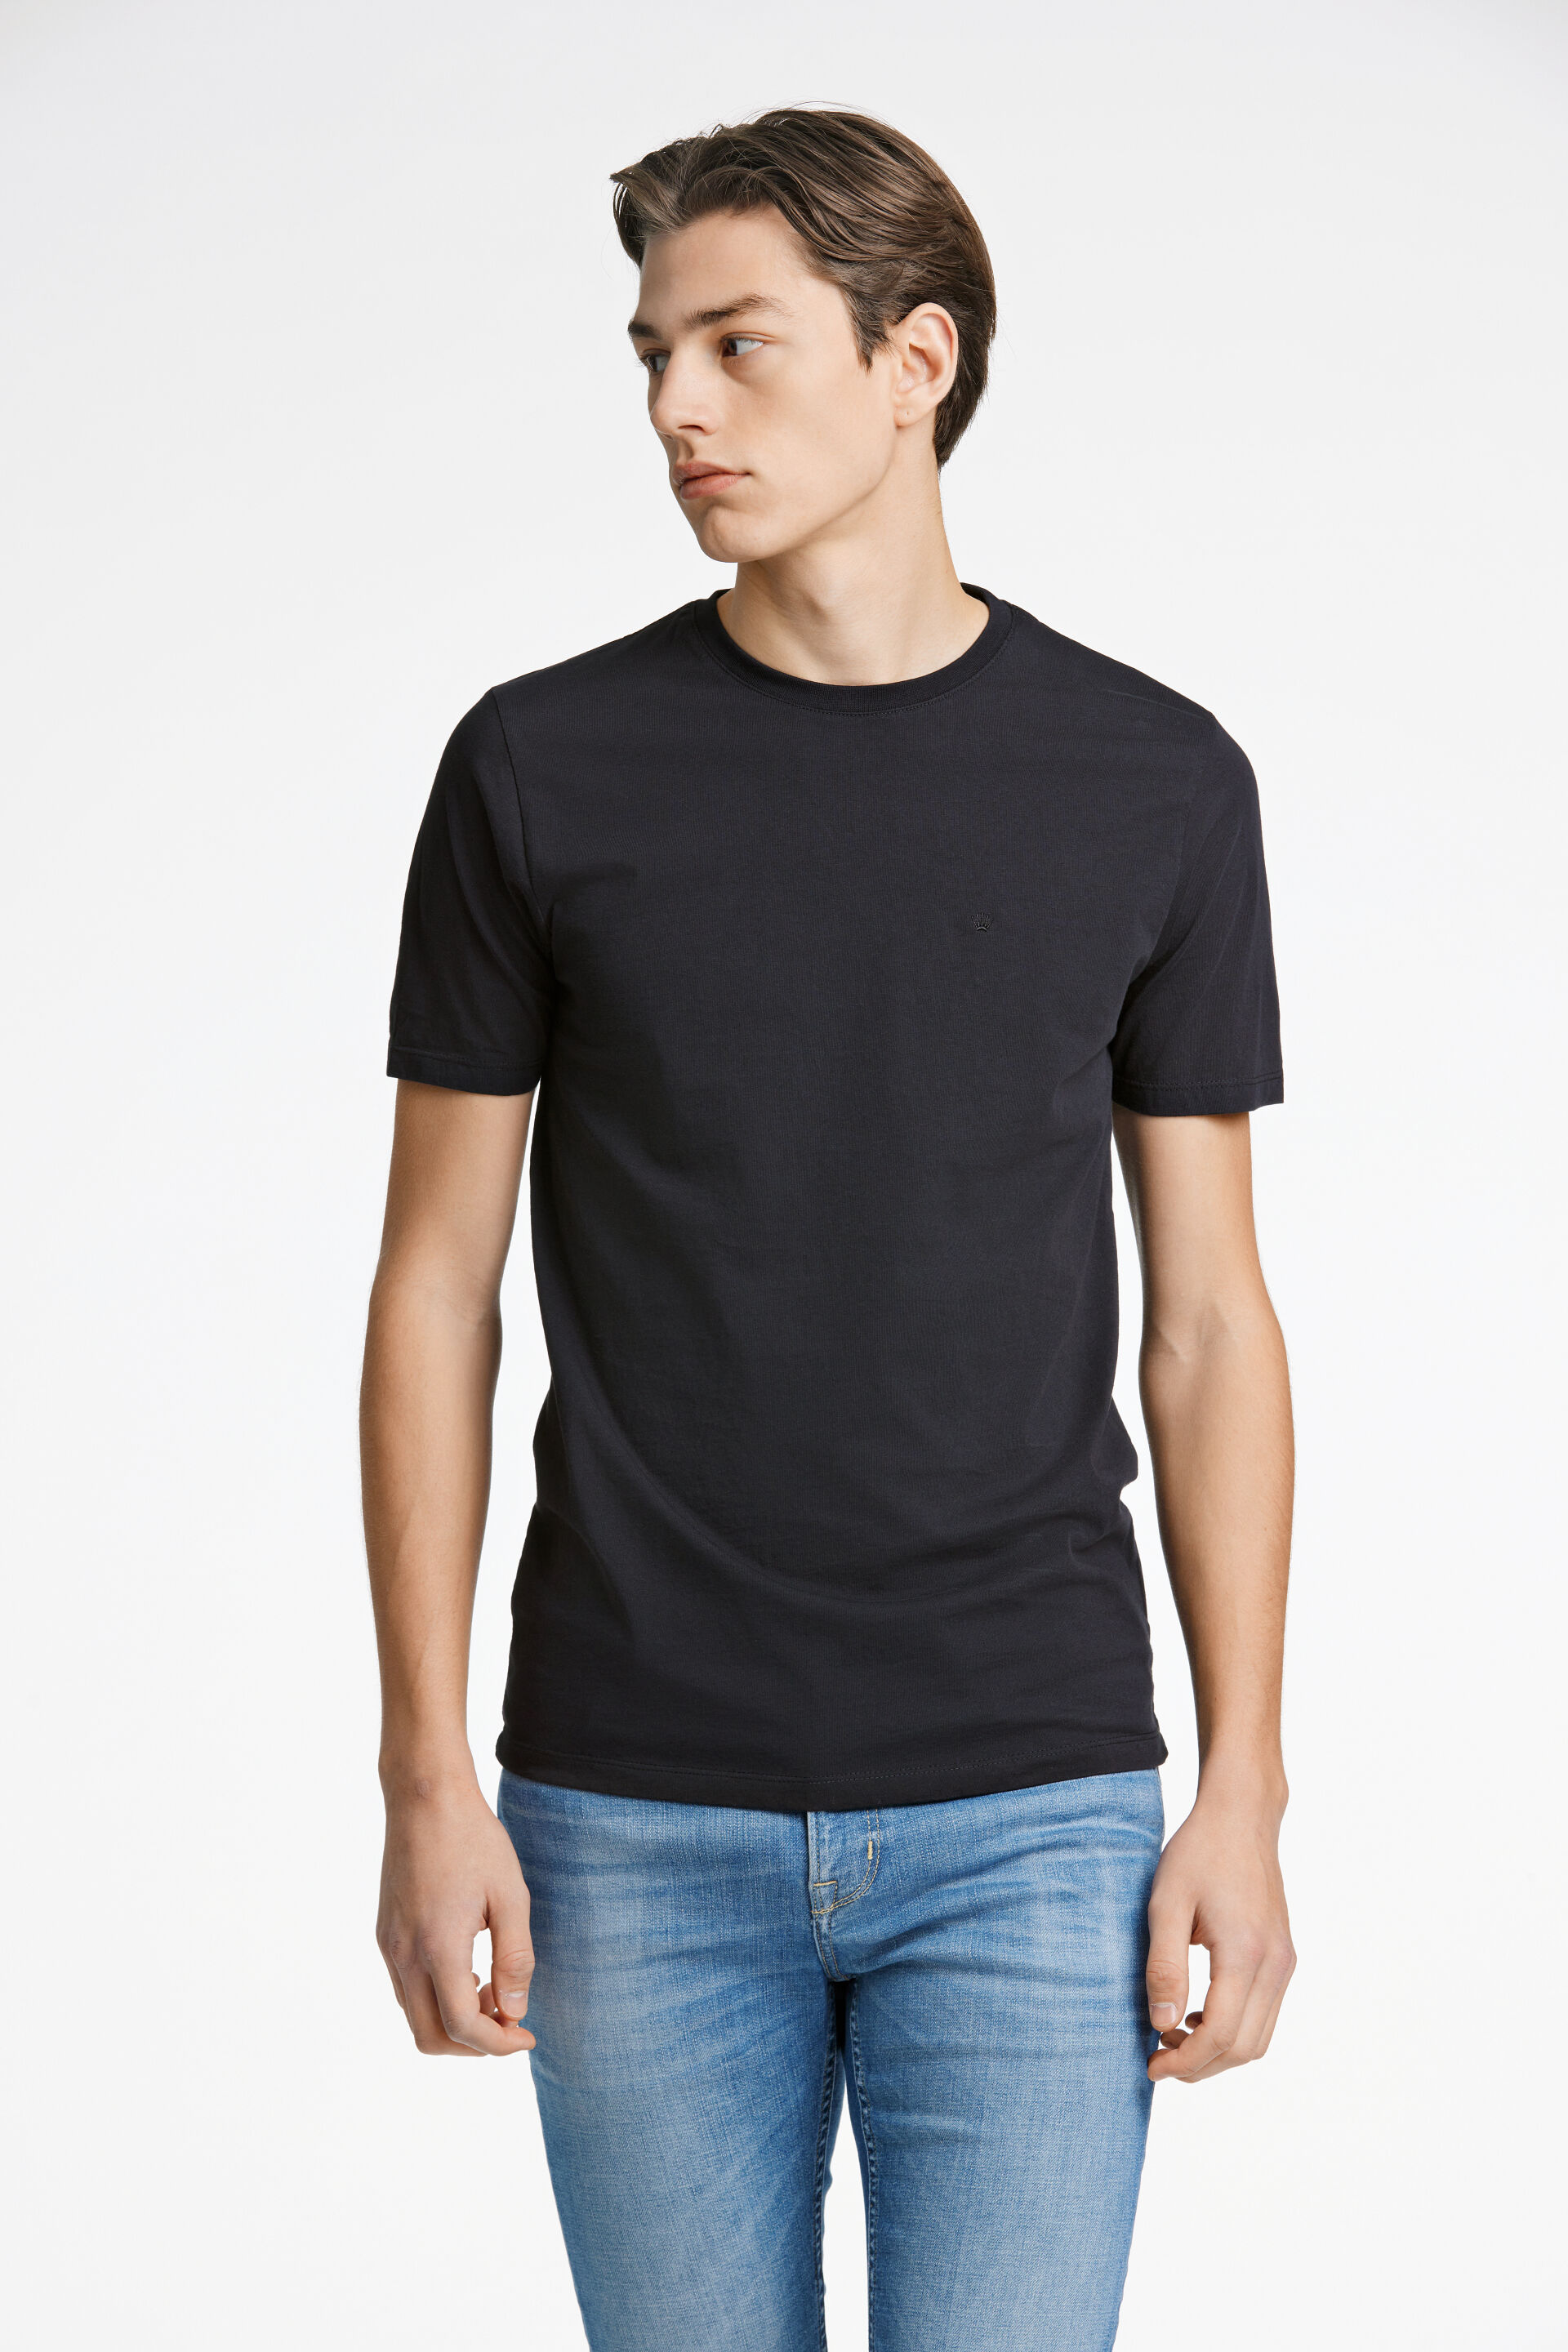 Junk de Luxe  T-shirt Sort 60-40005